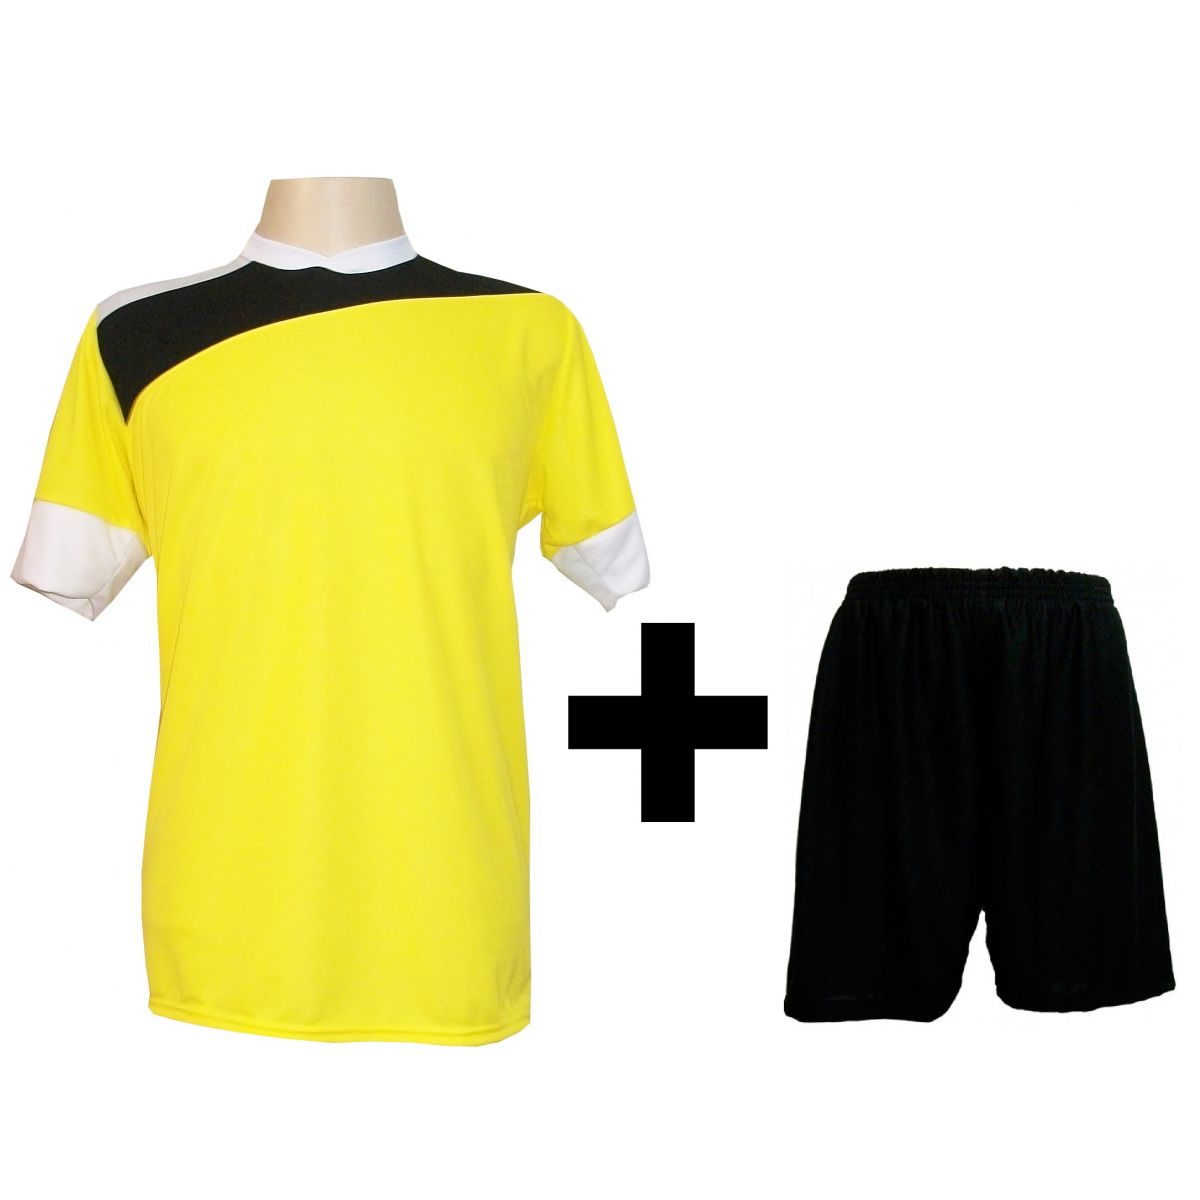 Uniforme Esportivo com 14 camisas modelo Sporting Amarelo/Preto/Branco + 14 calções modelo Madrid + 1 Goleiro + Brindes